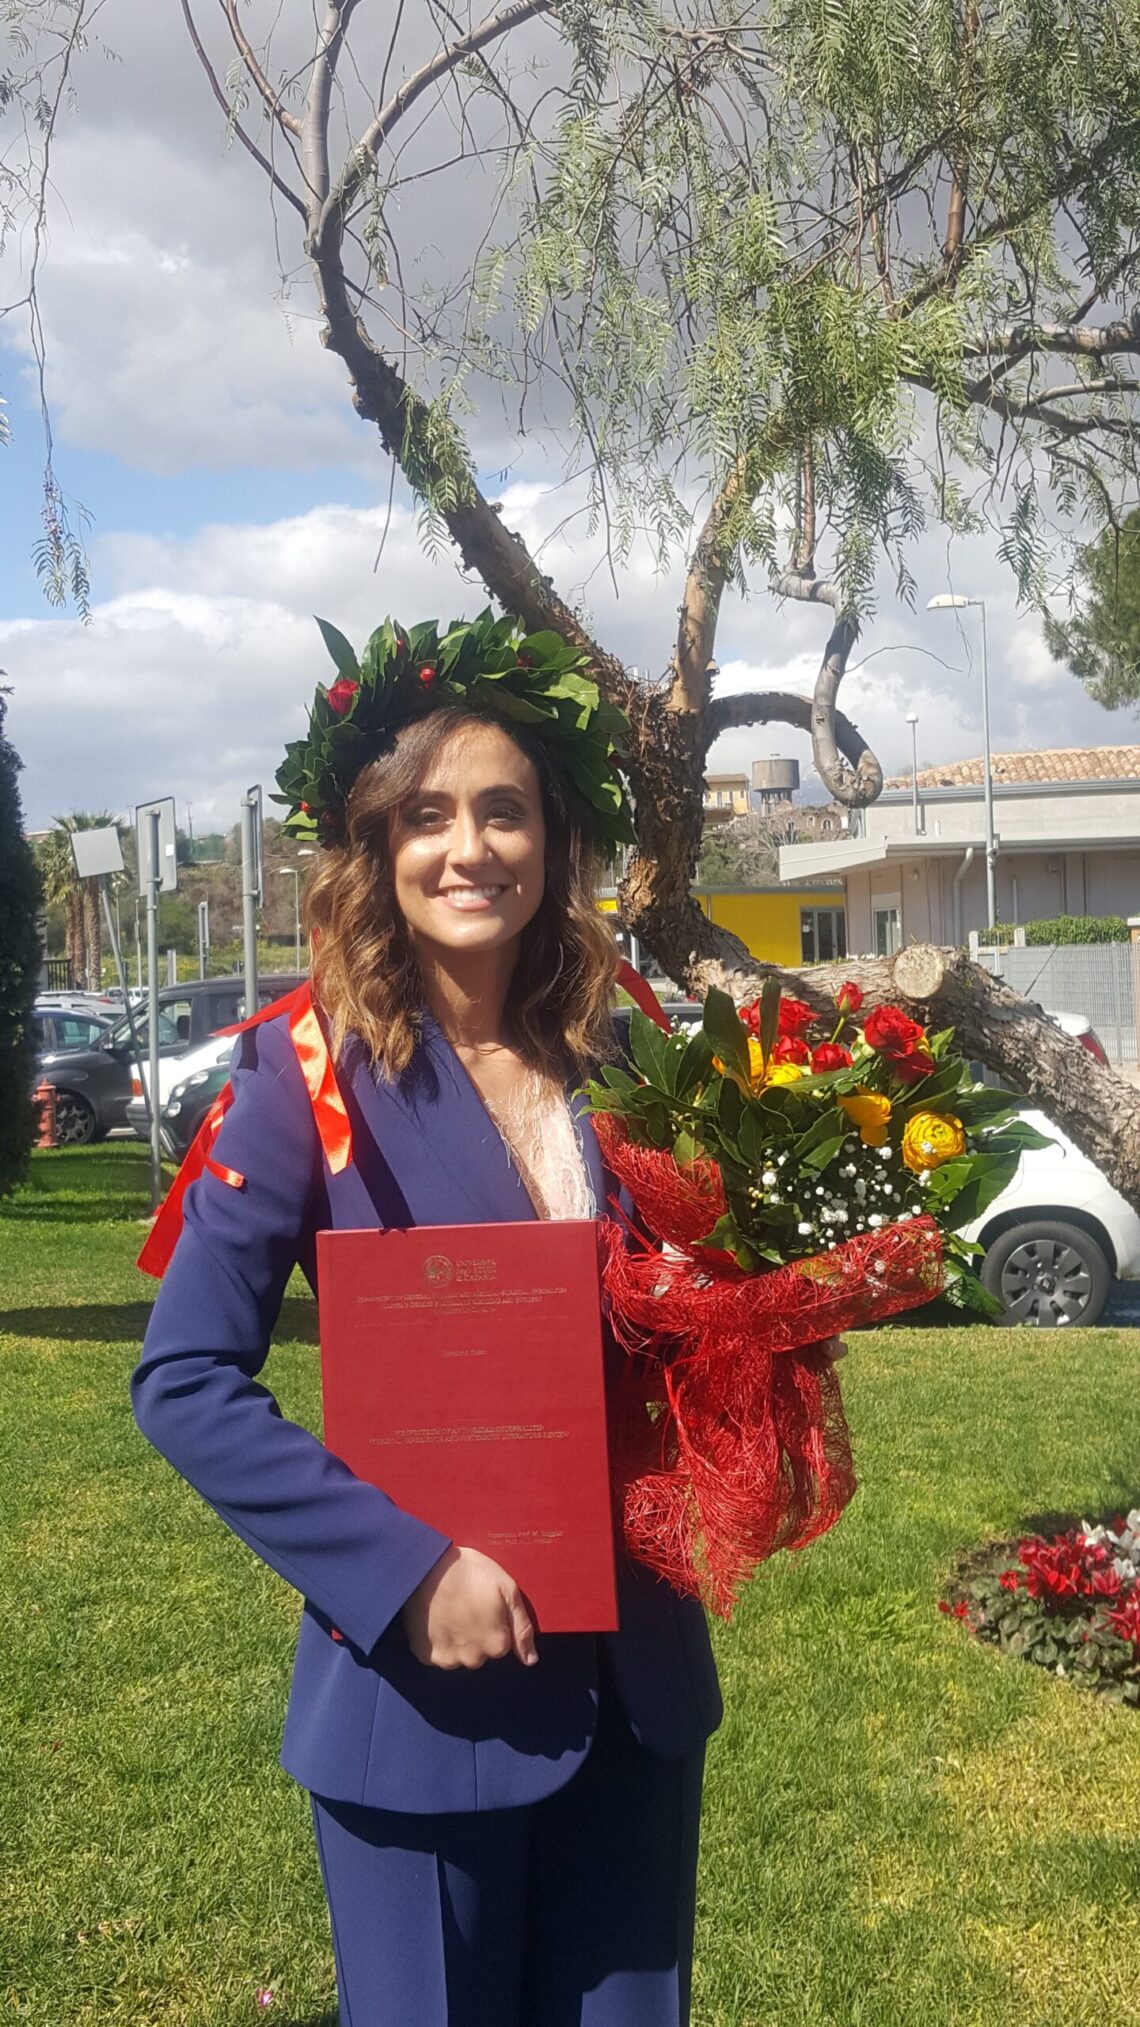 Carlentini: Giordana Russo si è brillantemente laureata in Medicina e Chirurgia, con 110 su 110 e lode  alla Facoltà di Medicina e Chirurgia dell’Università di  Catania